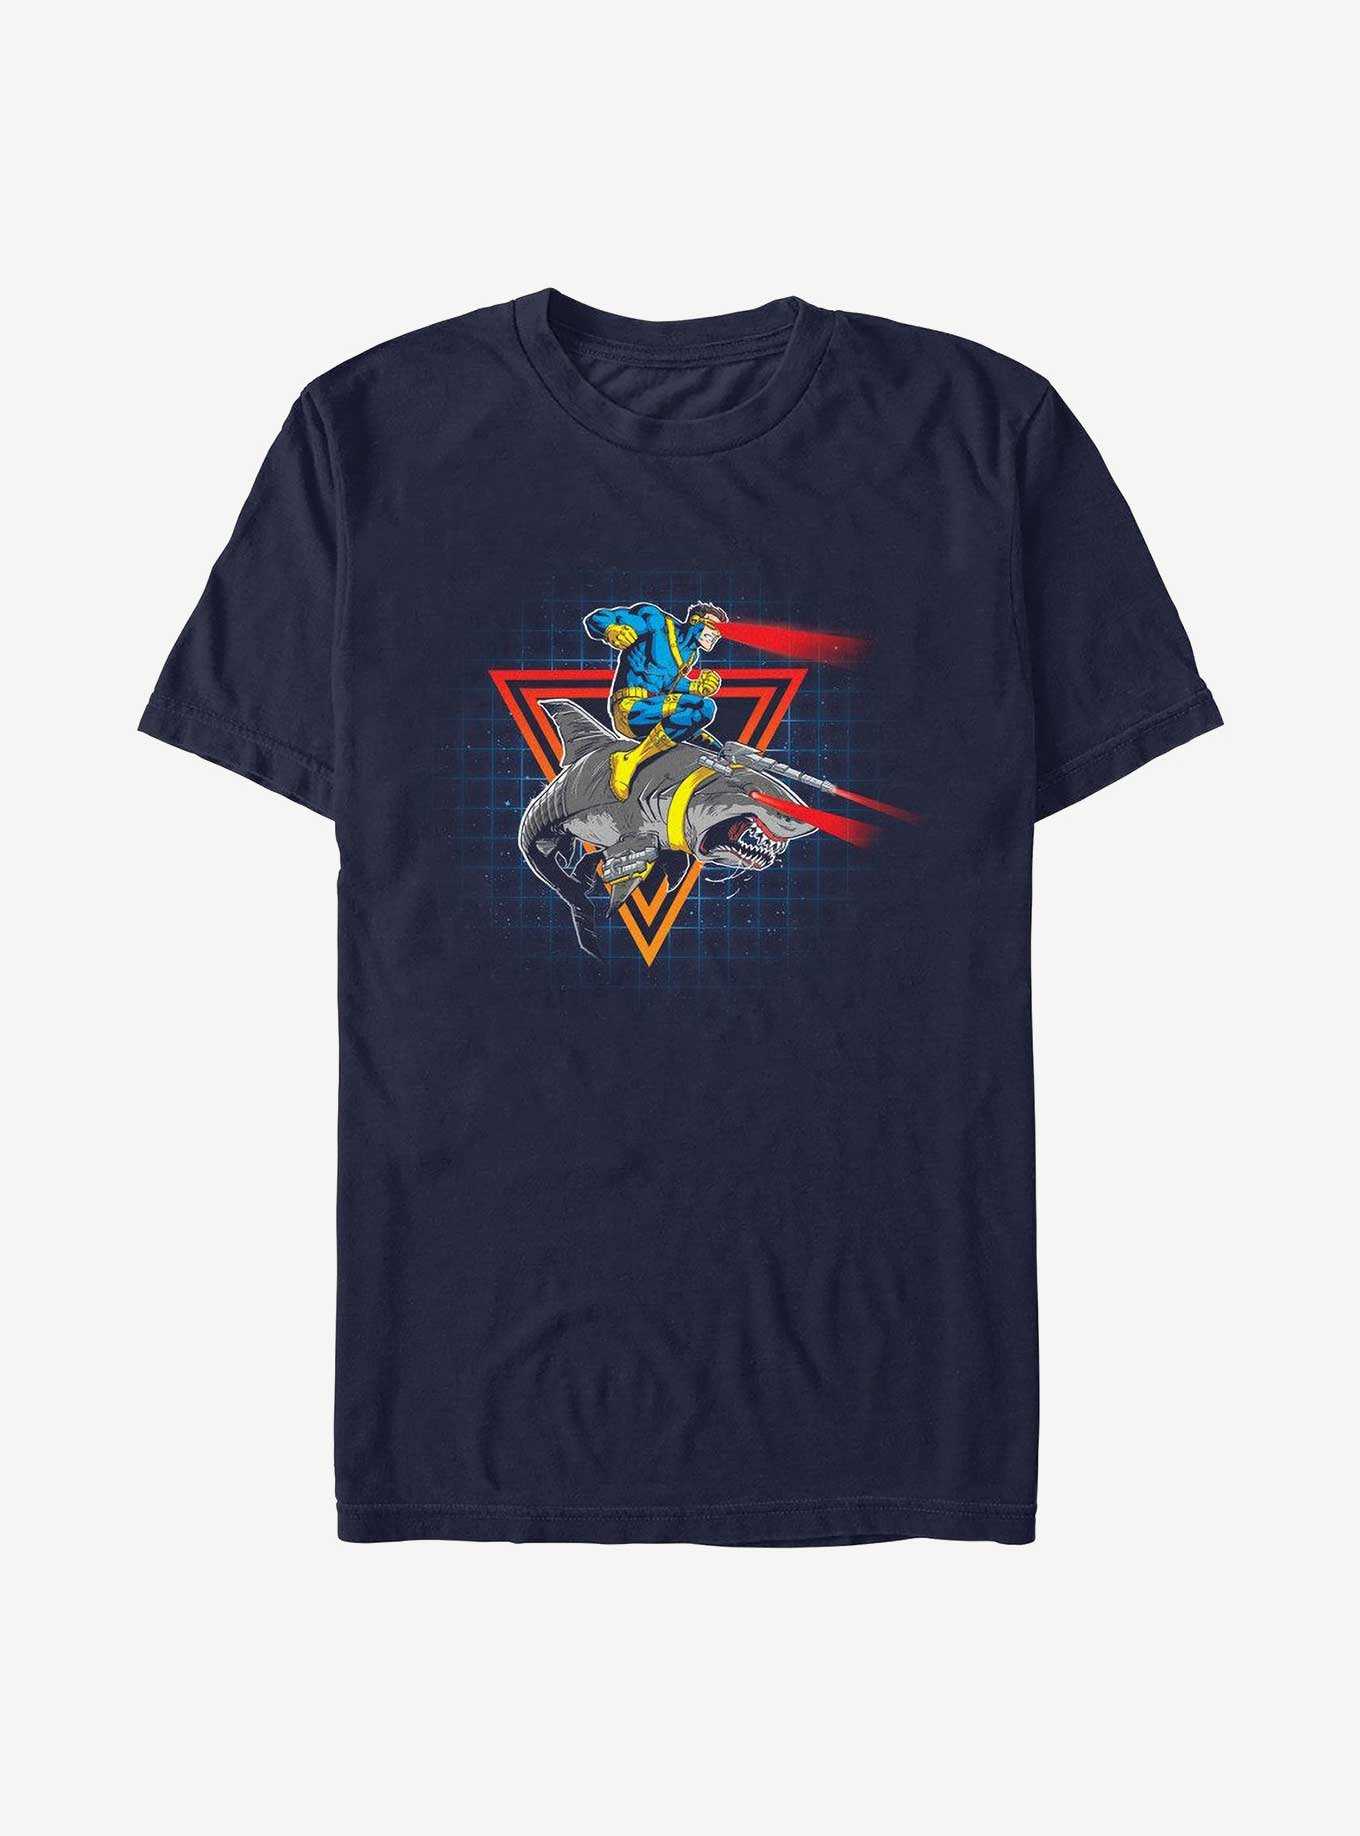 Marvel X-Men Retro Cyclops T-Shirt, , hi-res